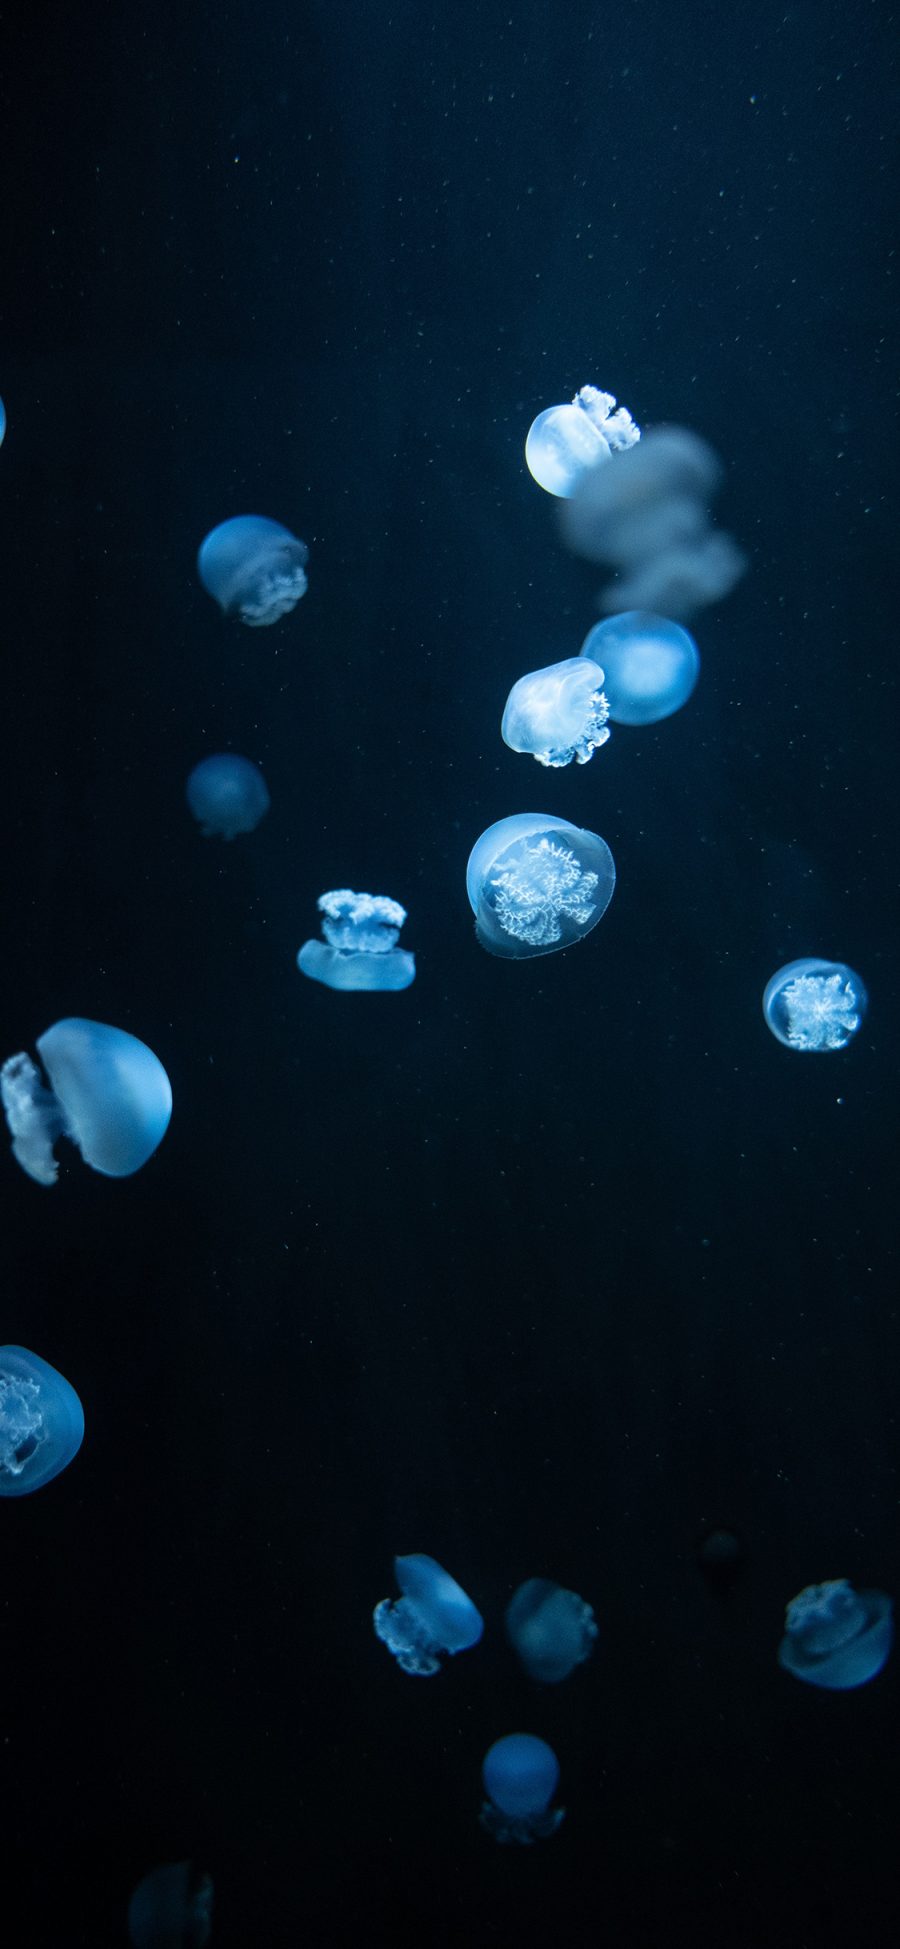 [2436×1125]水母 密集 浮游 透明 苹果手机壁纸图片